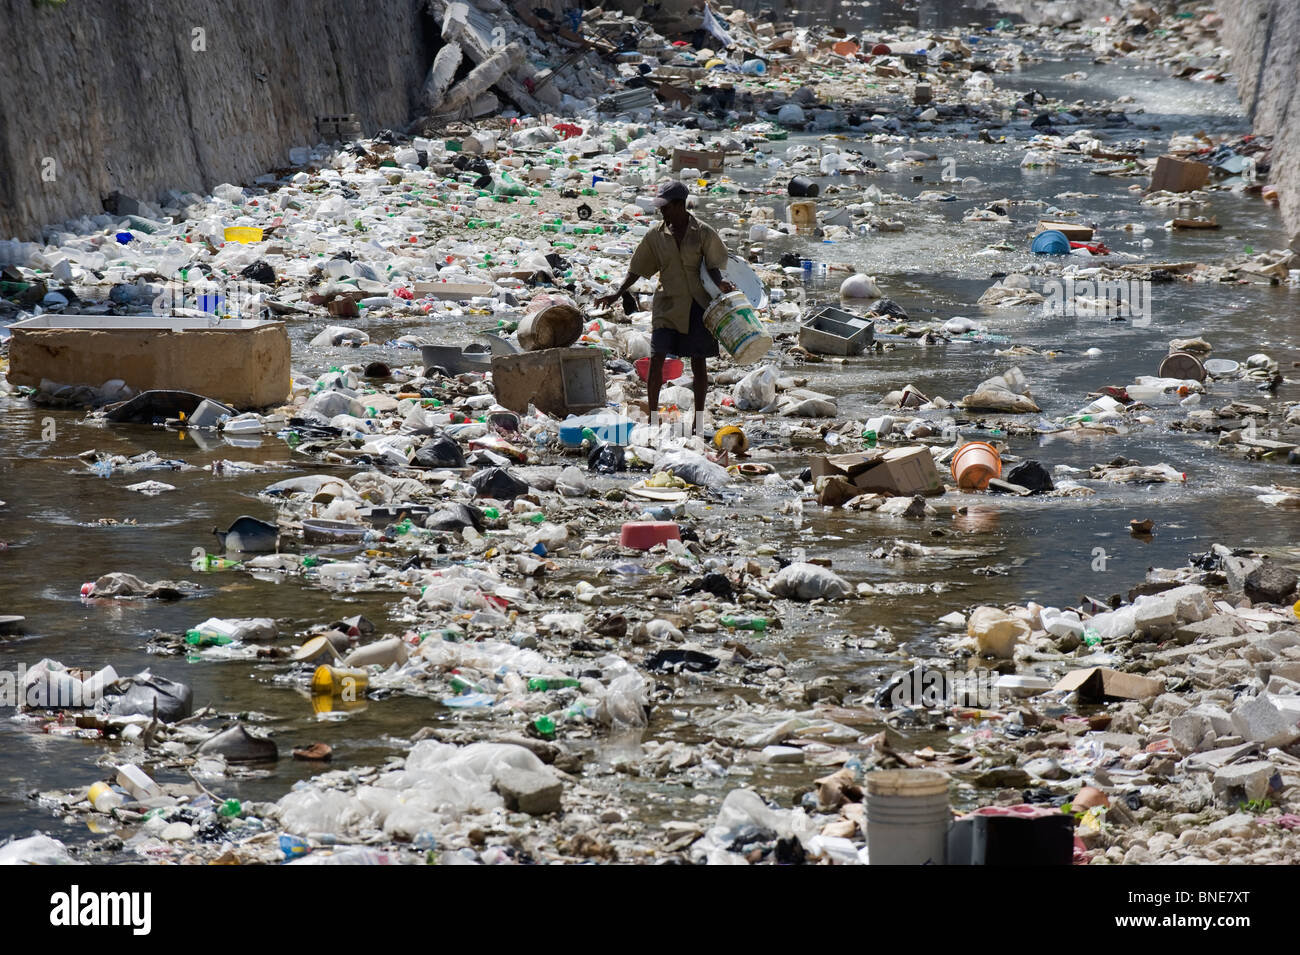 hombre-mirando-un-rio-lleno-de-basura-port-au-prince-haiti-el-caribe-bne7xt.jpg